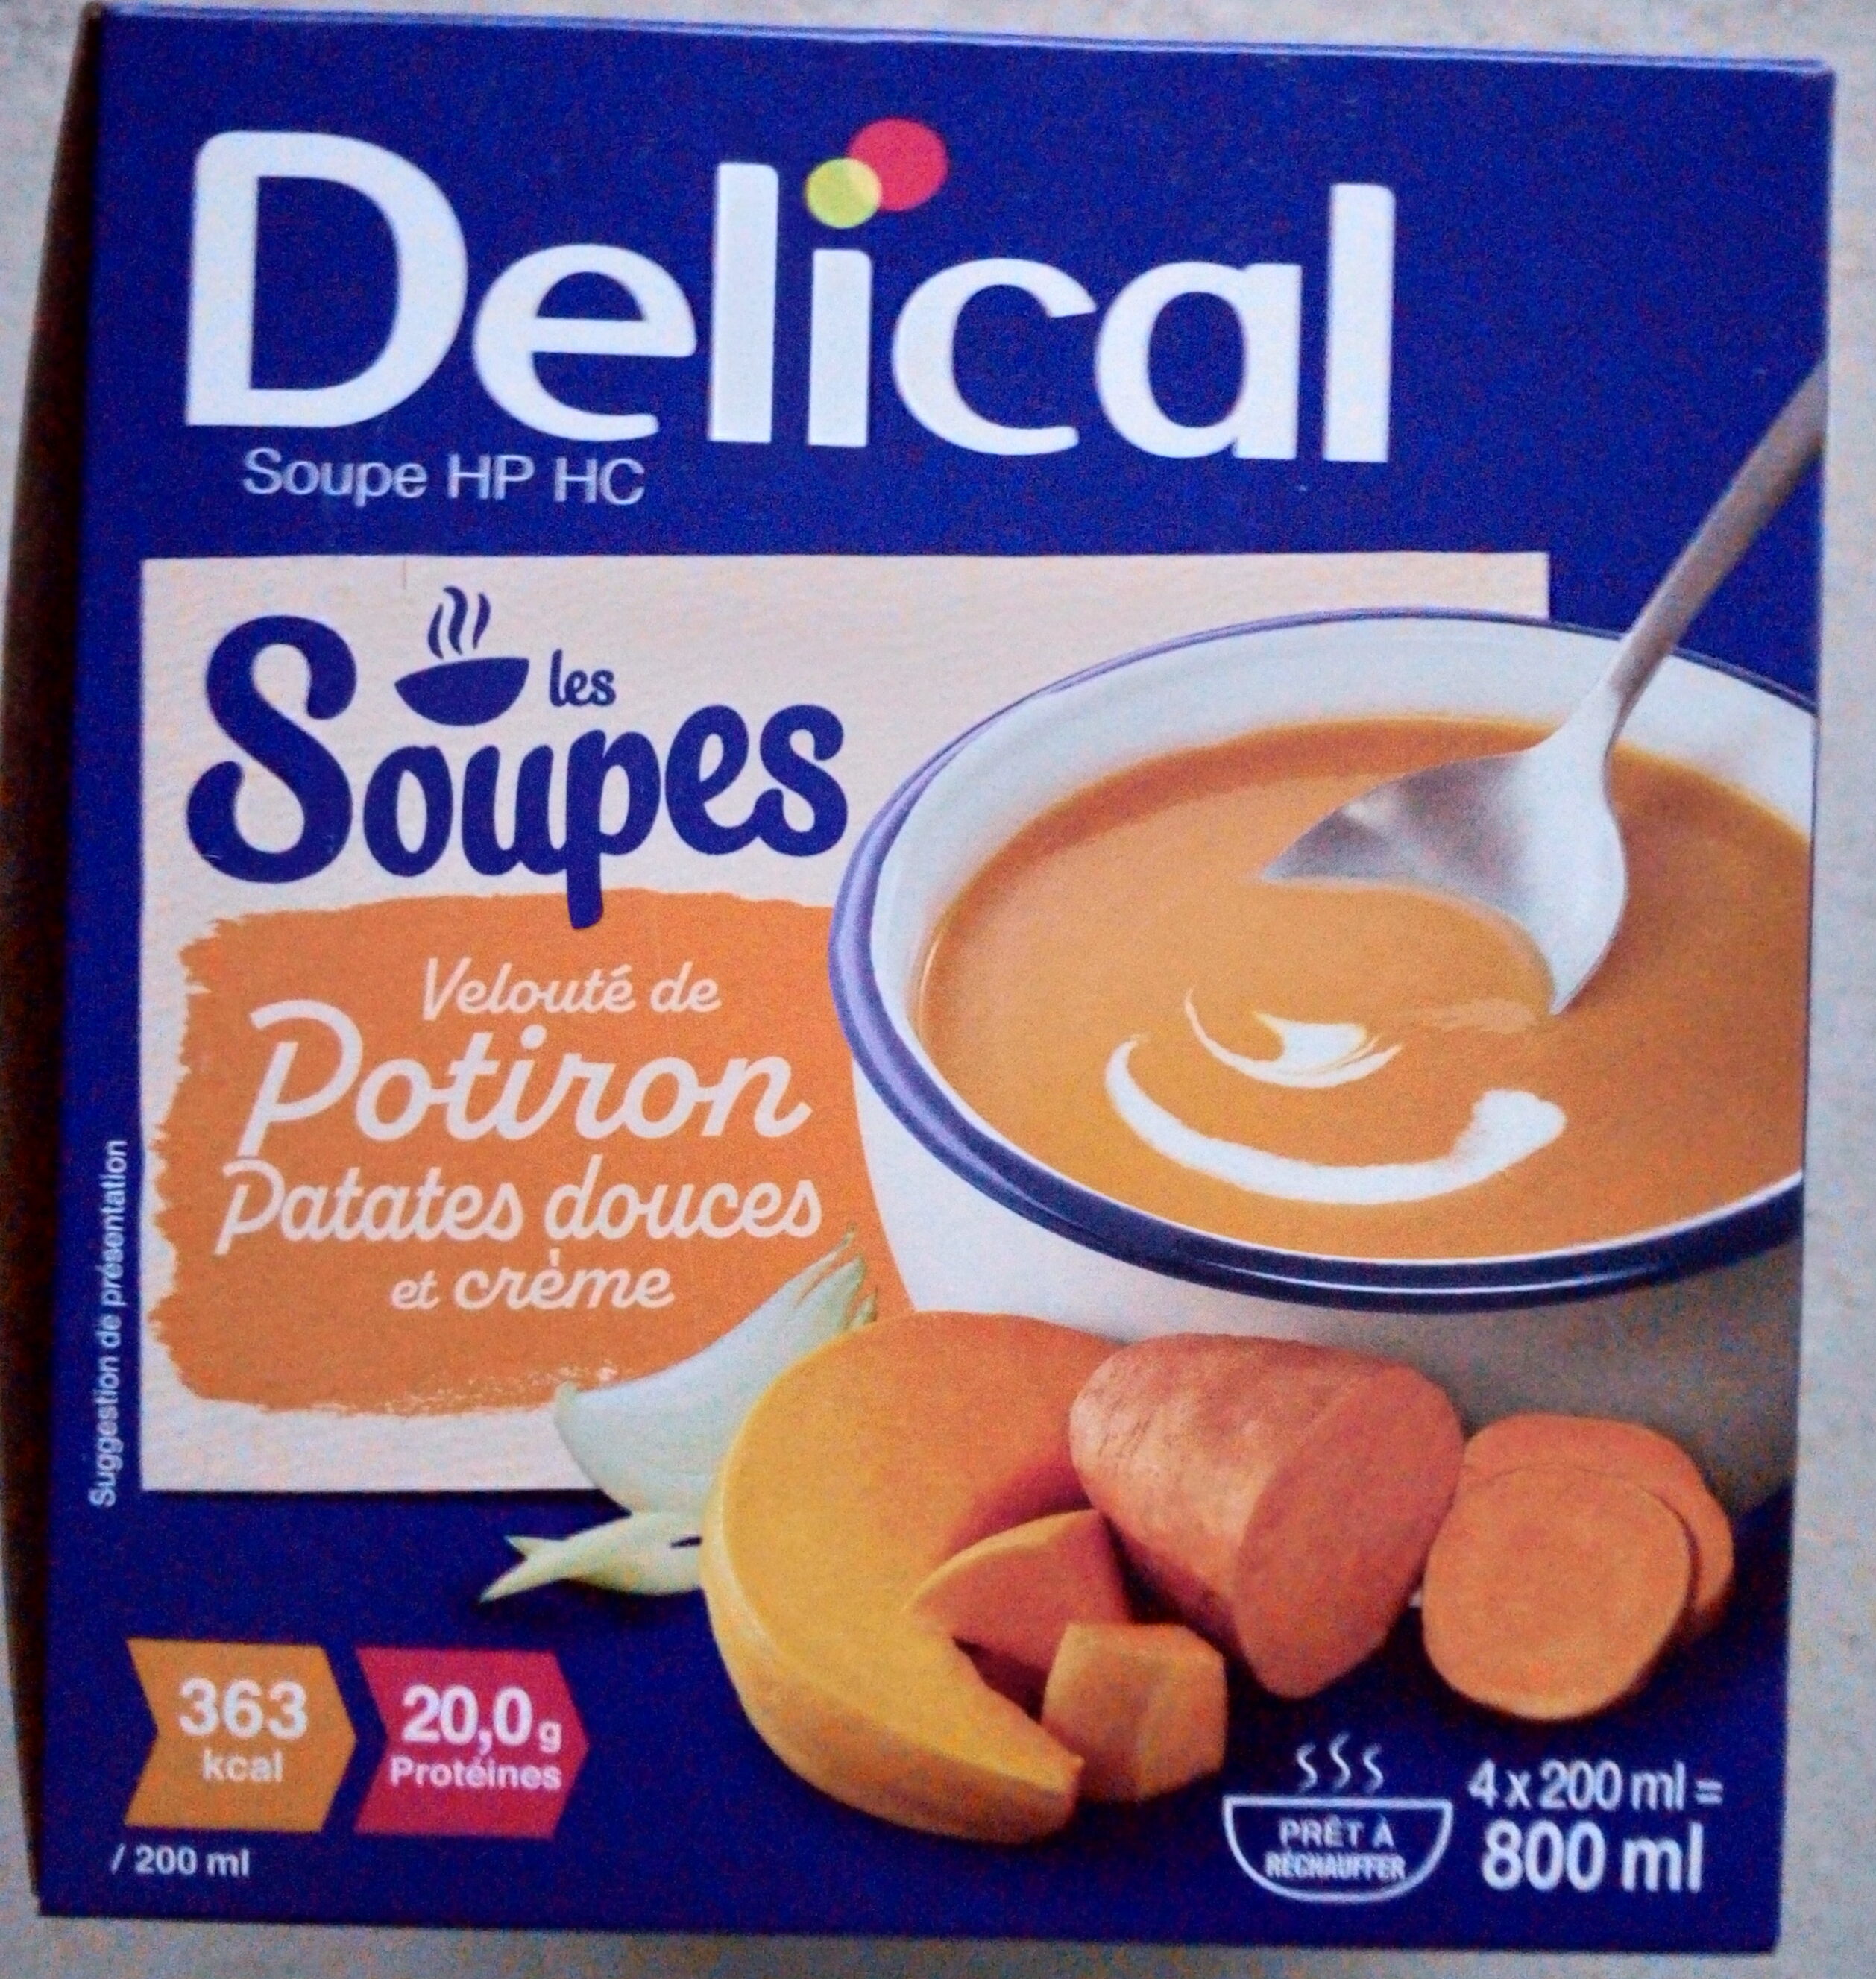 Les Soupes - Velouté de potiron, patates douces et crème - Product - fr